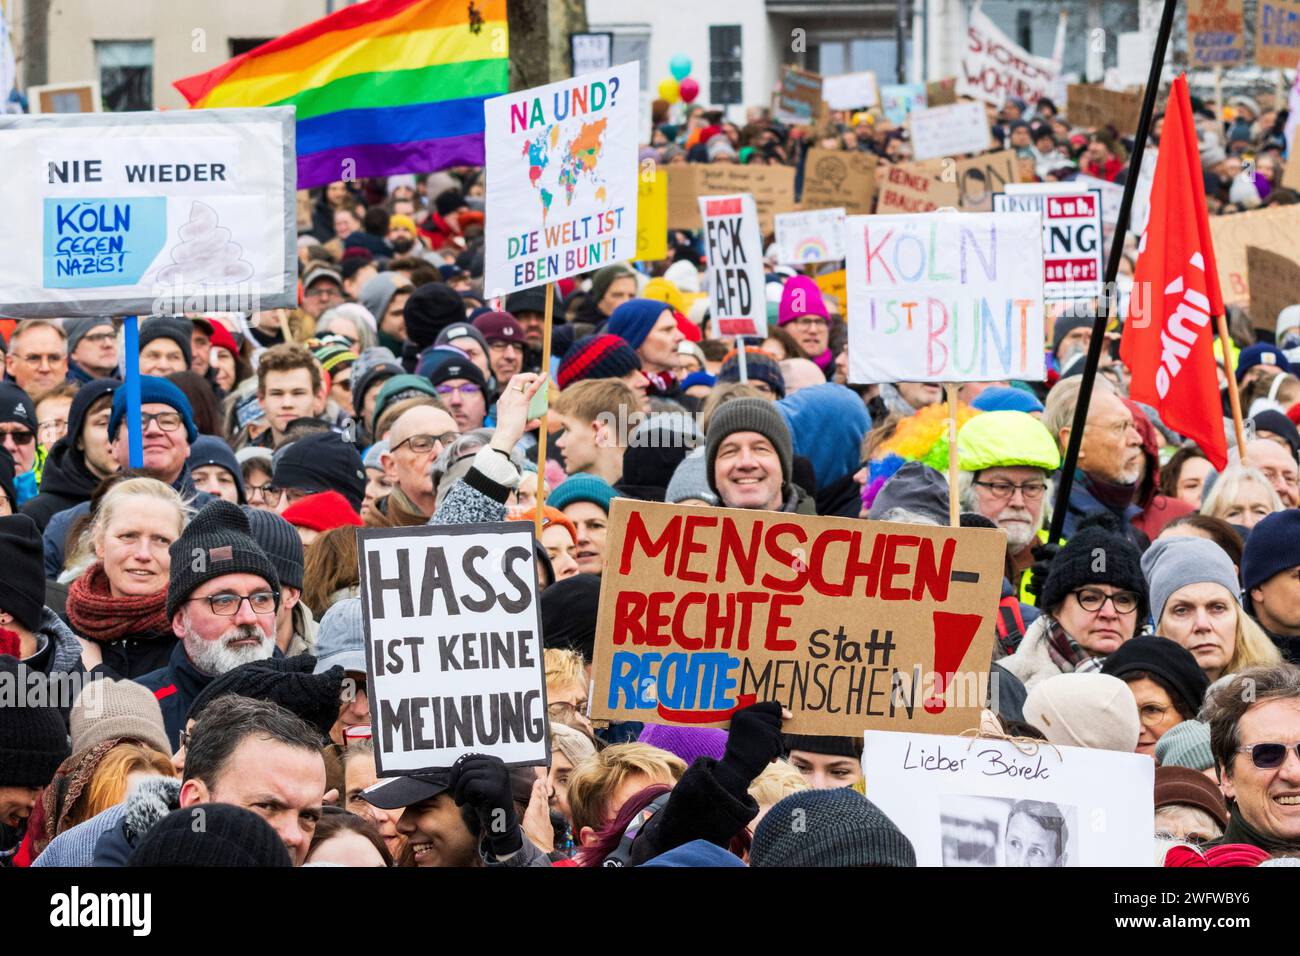 Colonia, Germania. La gente protesta contro il partito AfD di destra, alternative für Deutschland, avendo avuto colloqui con i neo-nazisti di estrema destra. Foto Stock